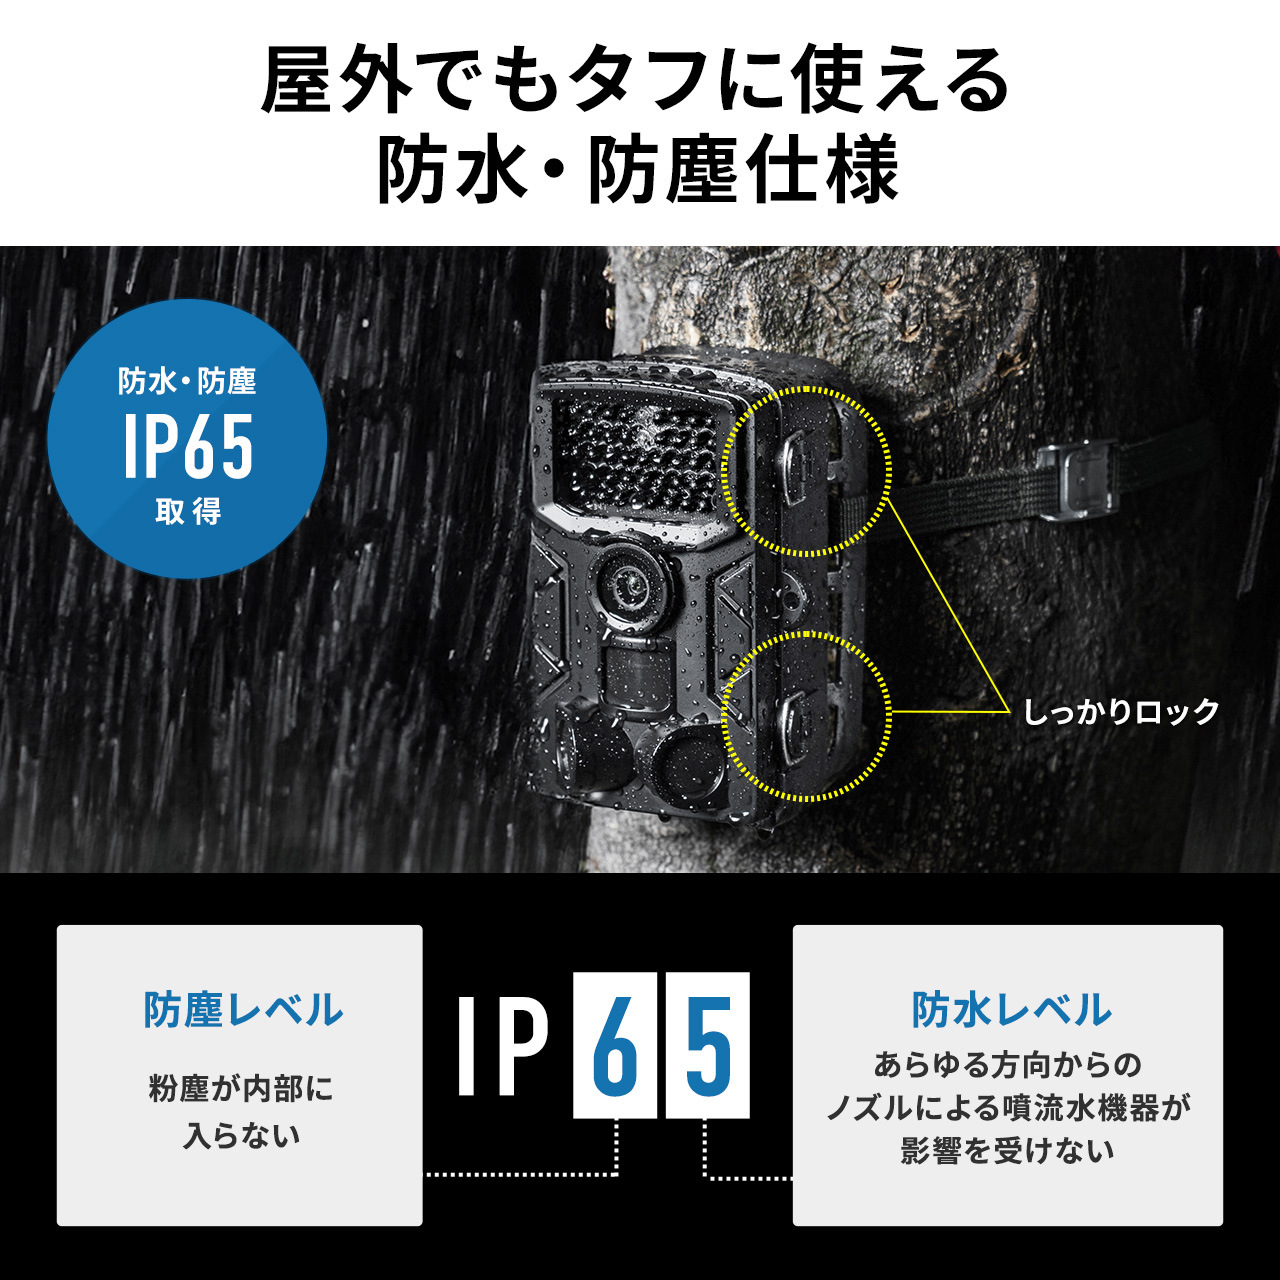 トレイルカメラ 防犯カメラ 屋外対応 フルHD 動物撮影 鳥獣対策 IP65防水 2400万画素保存 夜間撮影対応 3つの赤外線センサー搭載 400-CAM108